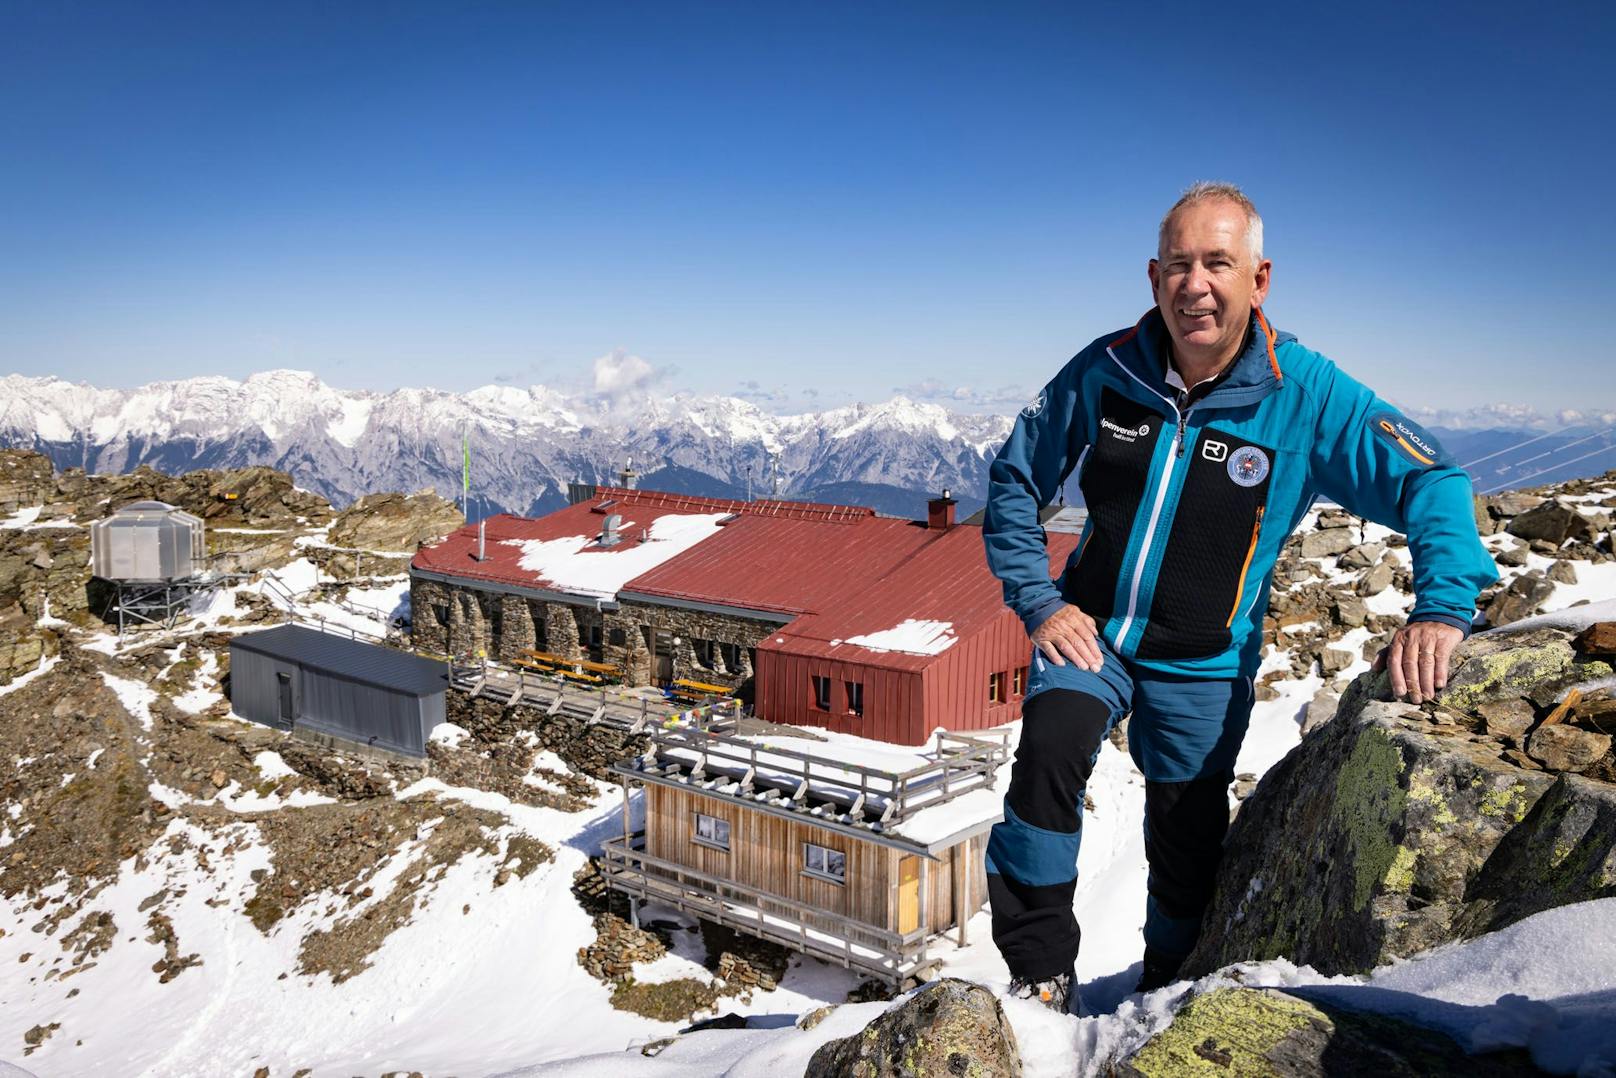 Romed Giner, 1. Vorsitzender des Alpenverein Hall in Tirol vor der an das A1 5G Netz angebundenen Glungezerhütte.